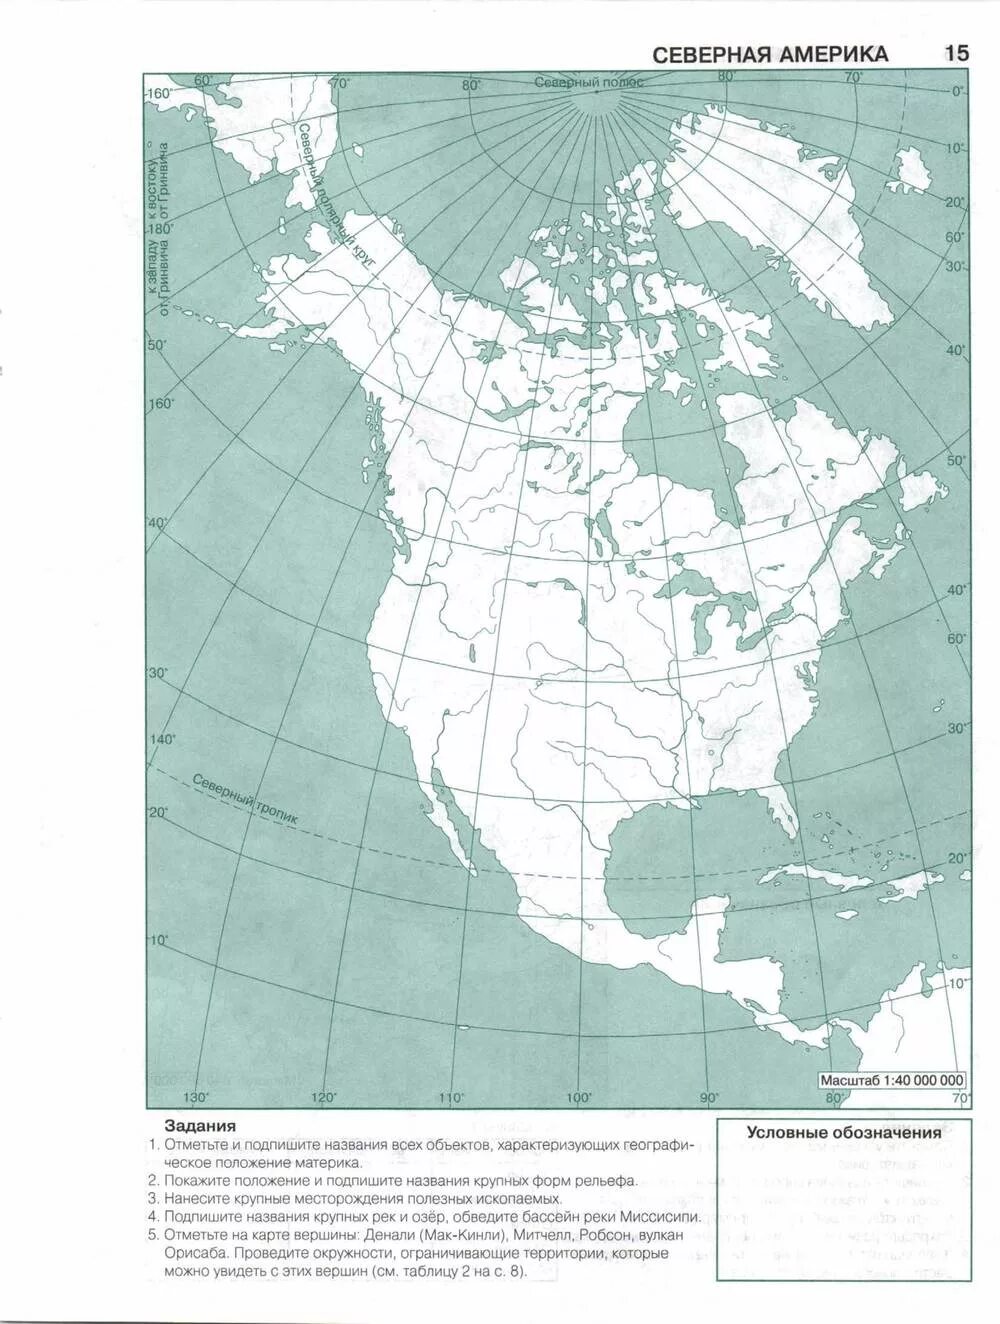 Контрольная работа северная америка 7. География 7 класс контурные карты Полярная звезда Северная Америка. Физическая карта Северной Америки 7 класс география контурная карта. Контурная карта по географии 7 класс Северная Америка с 7. Политическая карта Северной Америки 7 класс контурная карта.